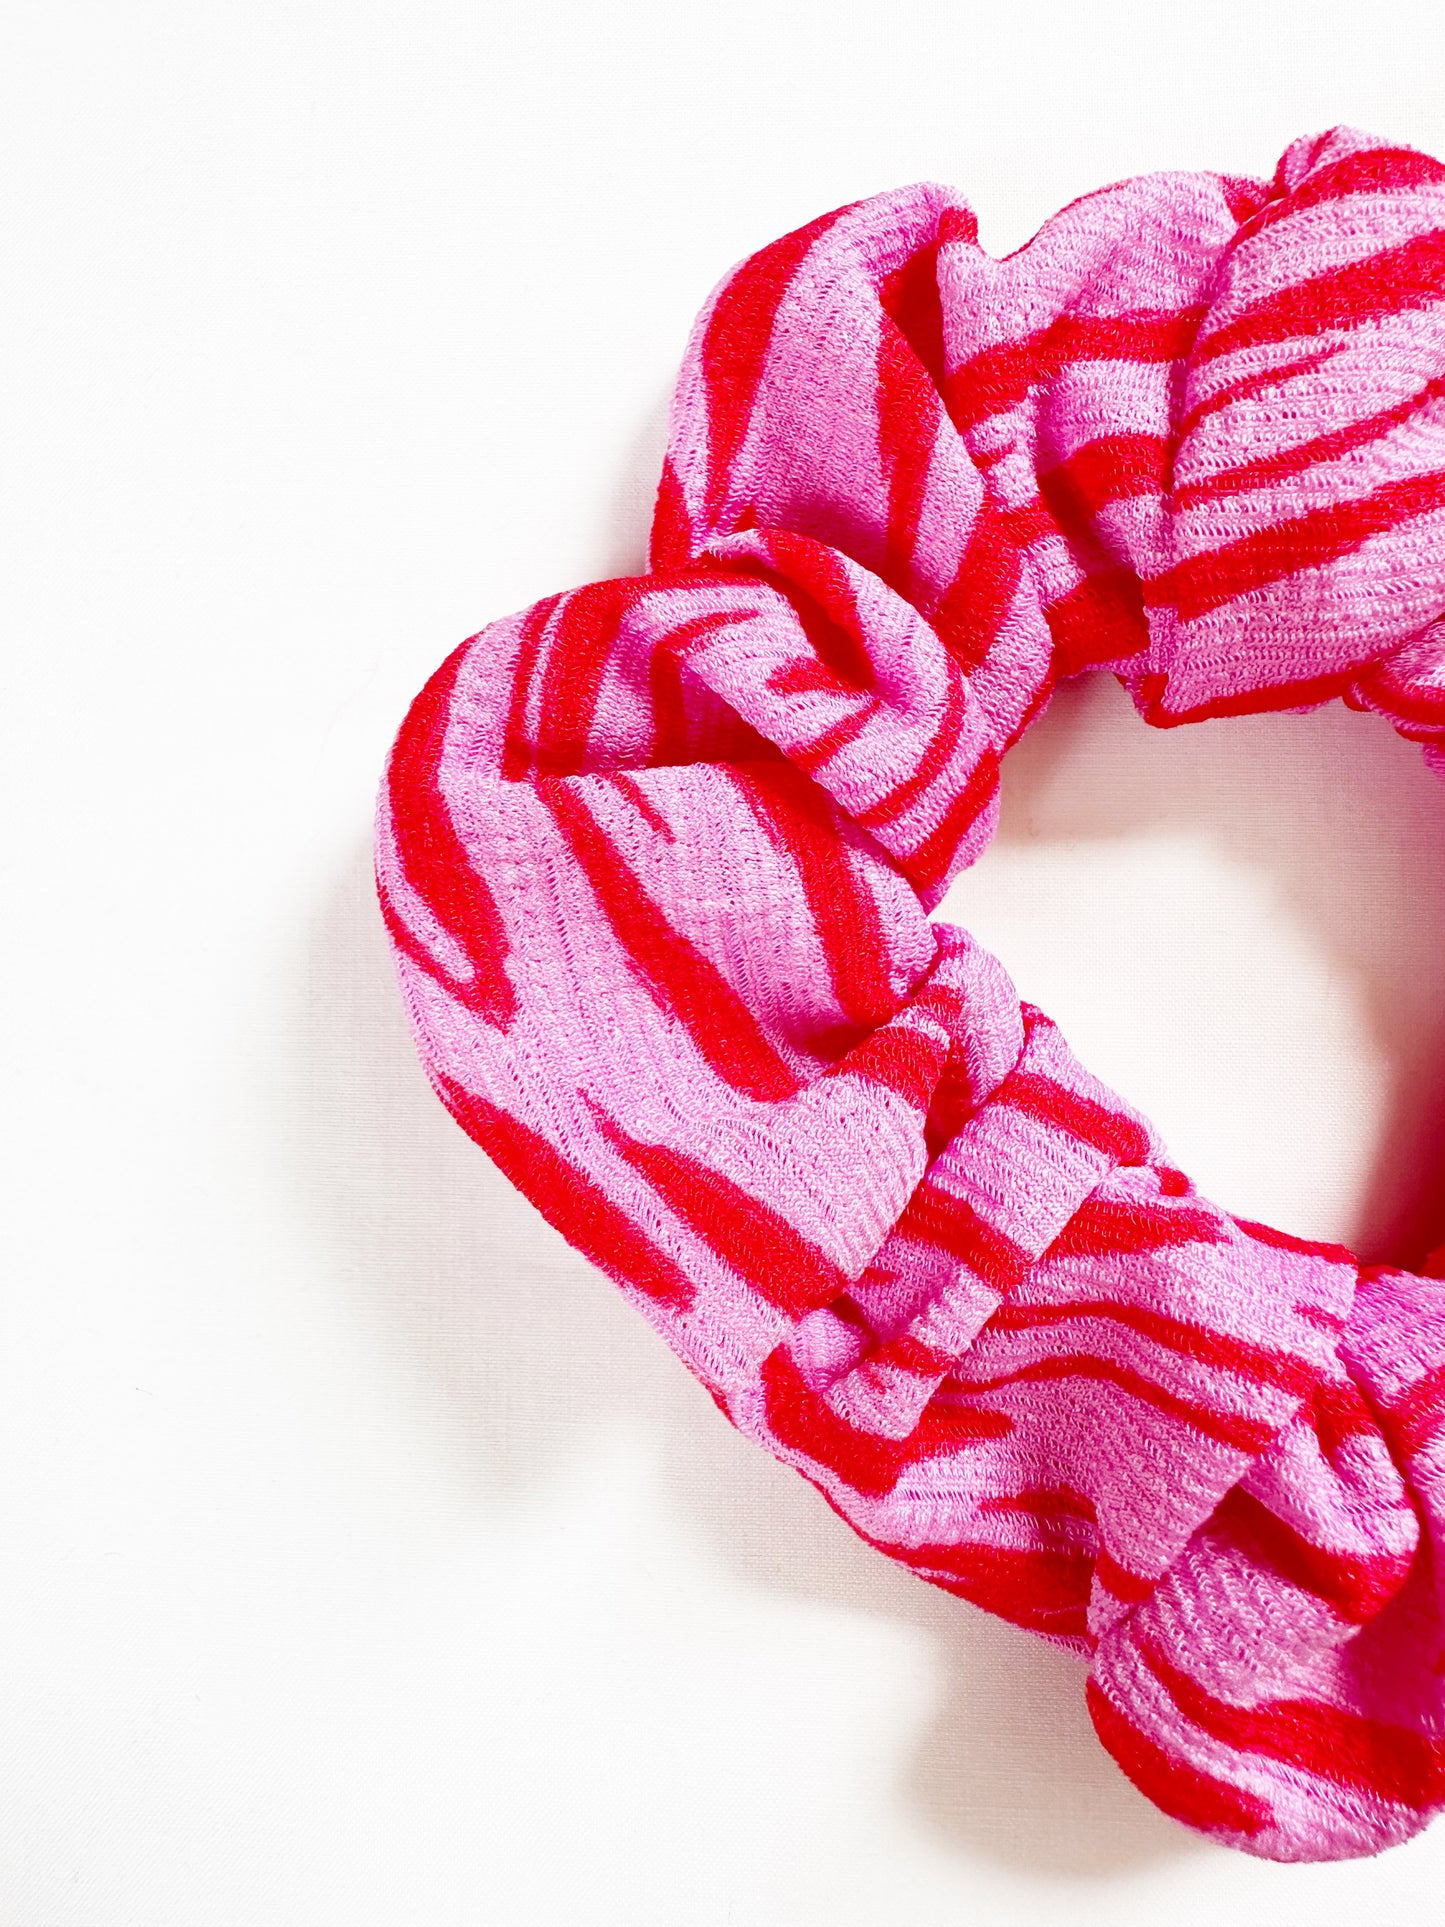 OG scrunchie in pink and red zebra